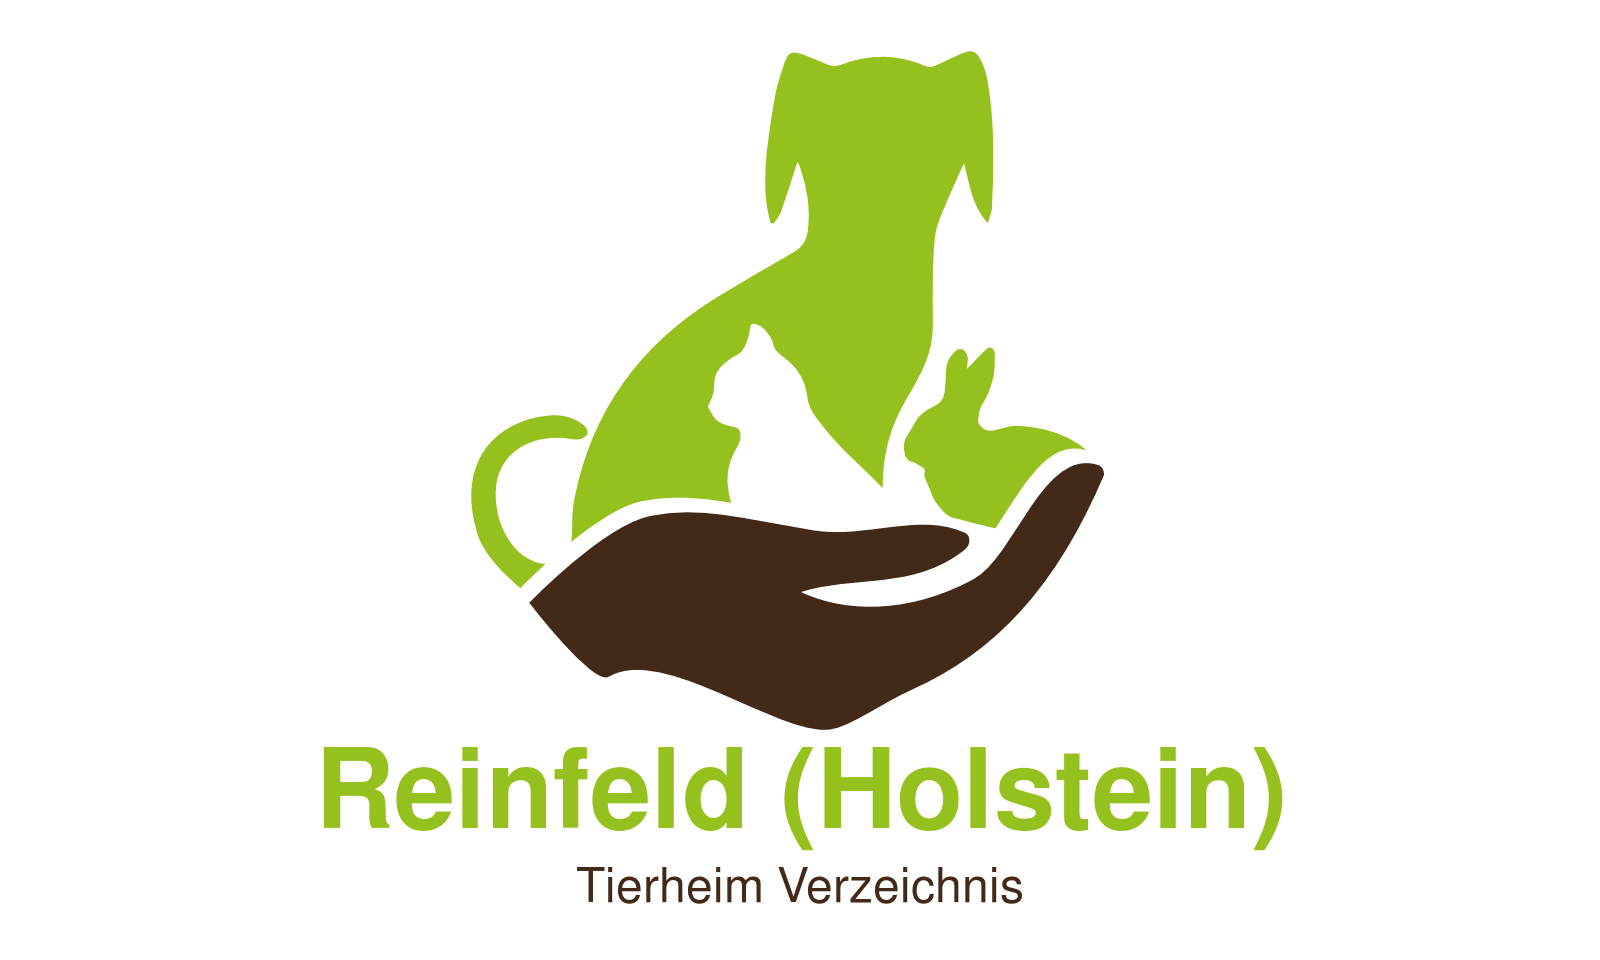 Tierheim Reinfeld (Holstein)